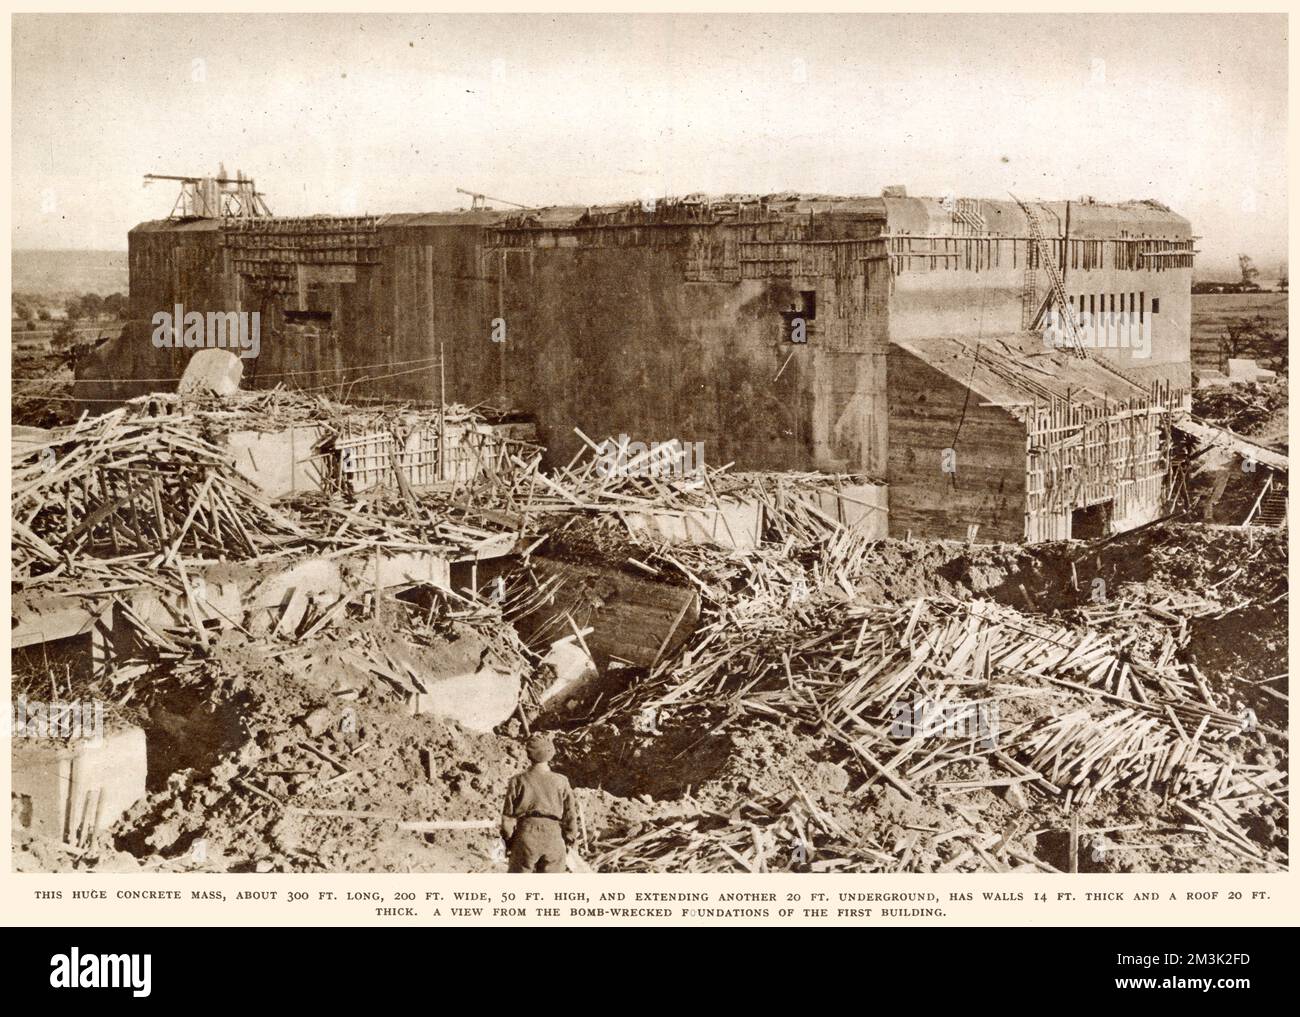 Der riesige Betonbunker der deutschen V-2-Basis in Watten, nahe St. Omer, Frankreich, 1944. Dieser Bunker war 300 Meter hoch. Lang, 200 m Breit und 50 Fuß Groß. Die Raketenabschussbasis Watten wurde im Sommer 1944 von der Royal Air Force massiv bombardiert, daher die großen Trümmerhaufen um den Bunker herum. Stockfoto